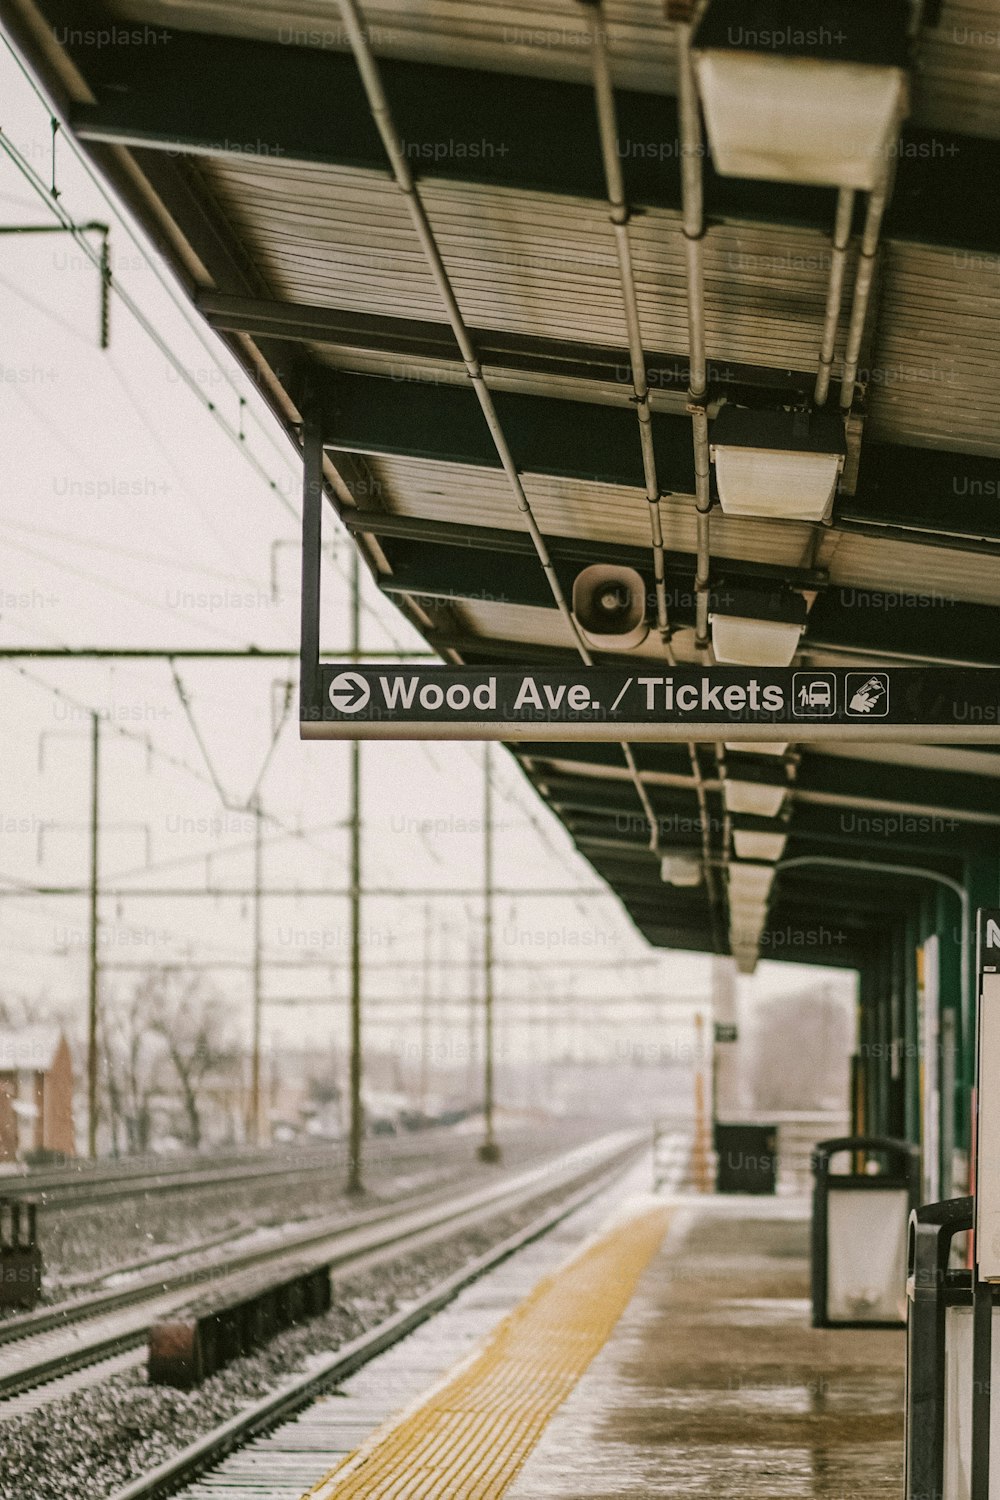 Una stazione ferroviaria con un cartello che dice Wood Ave